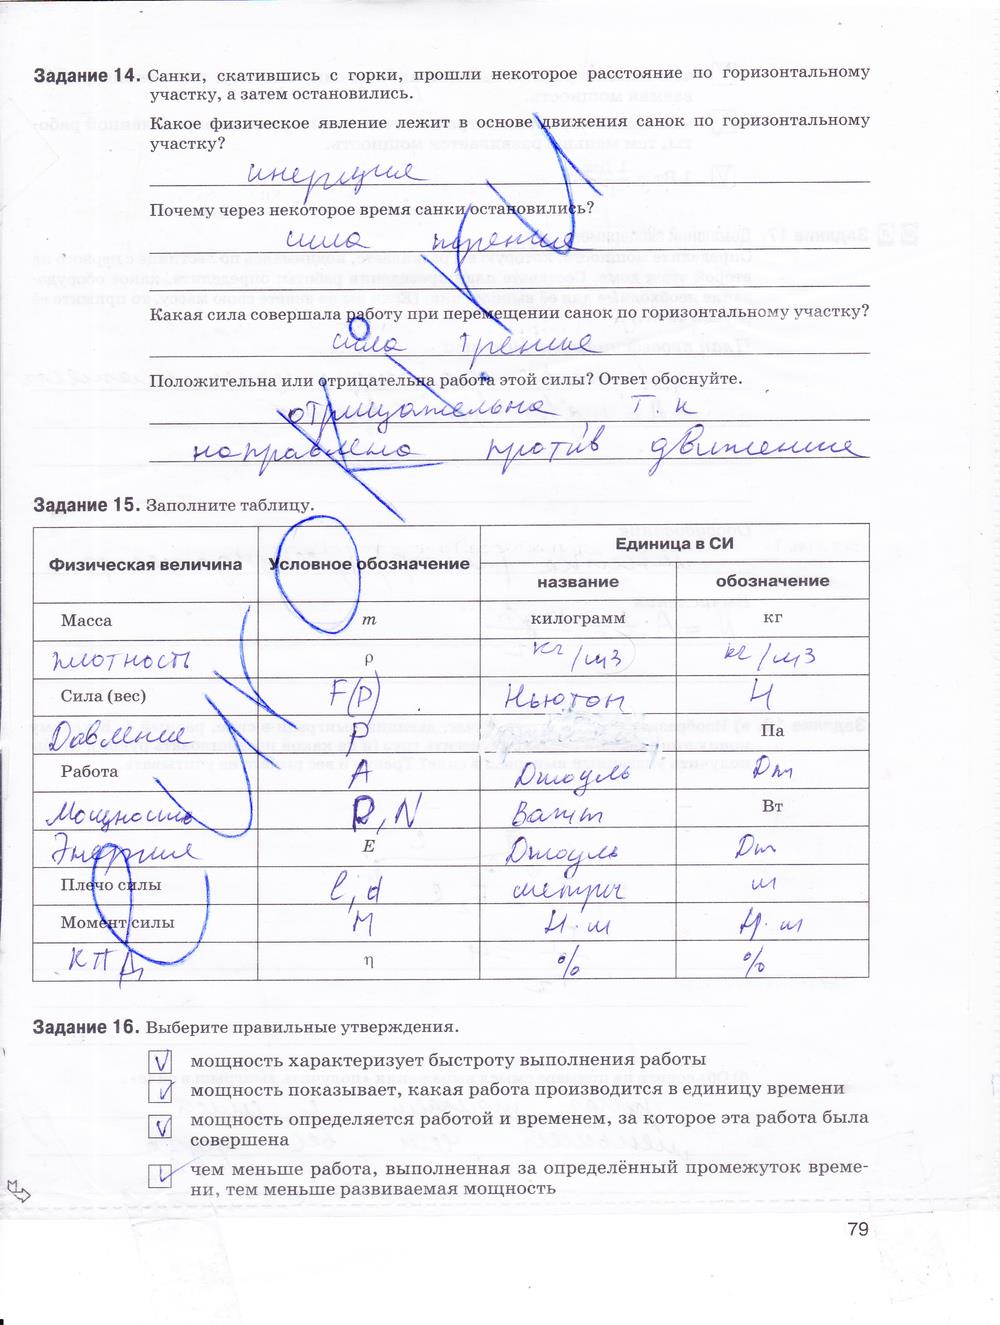 гдз 9 класс рабочая тетрадь страница 79 физика Гутник, Власова